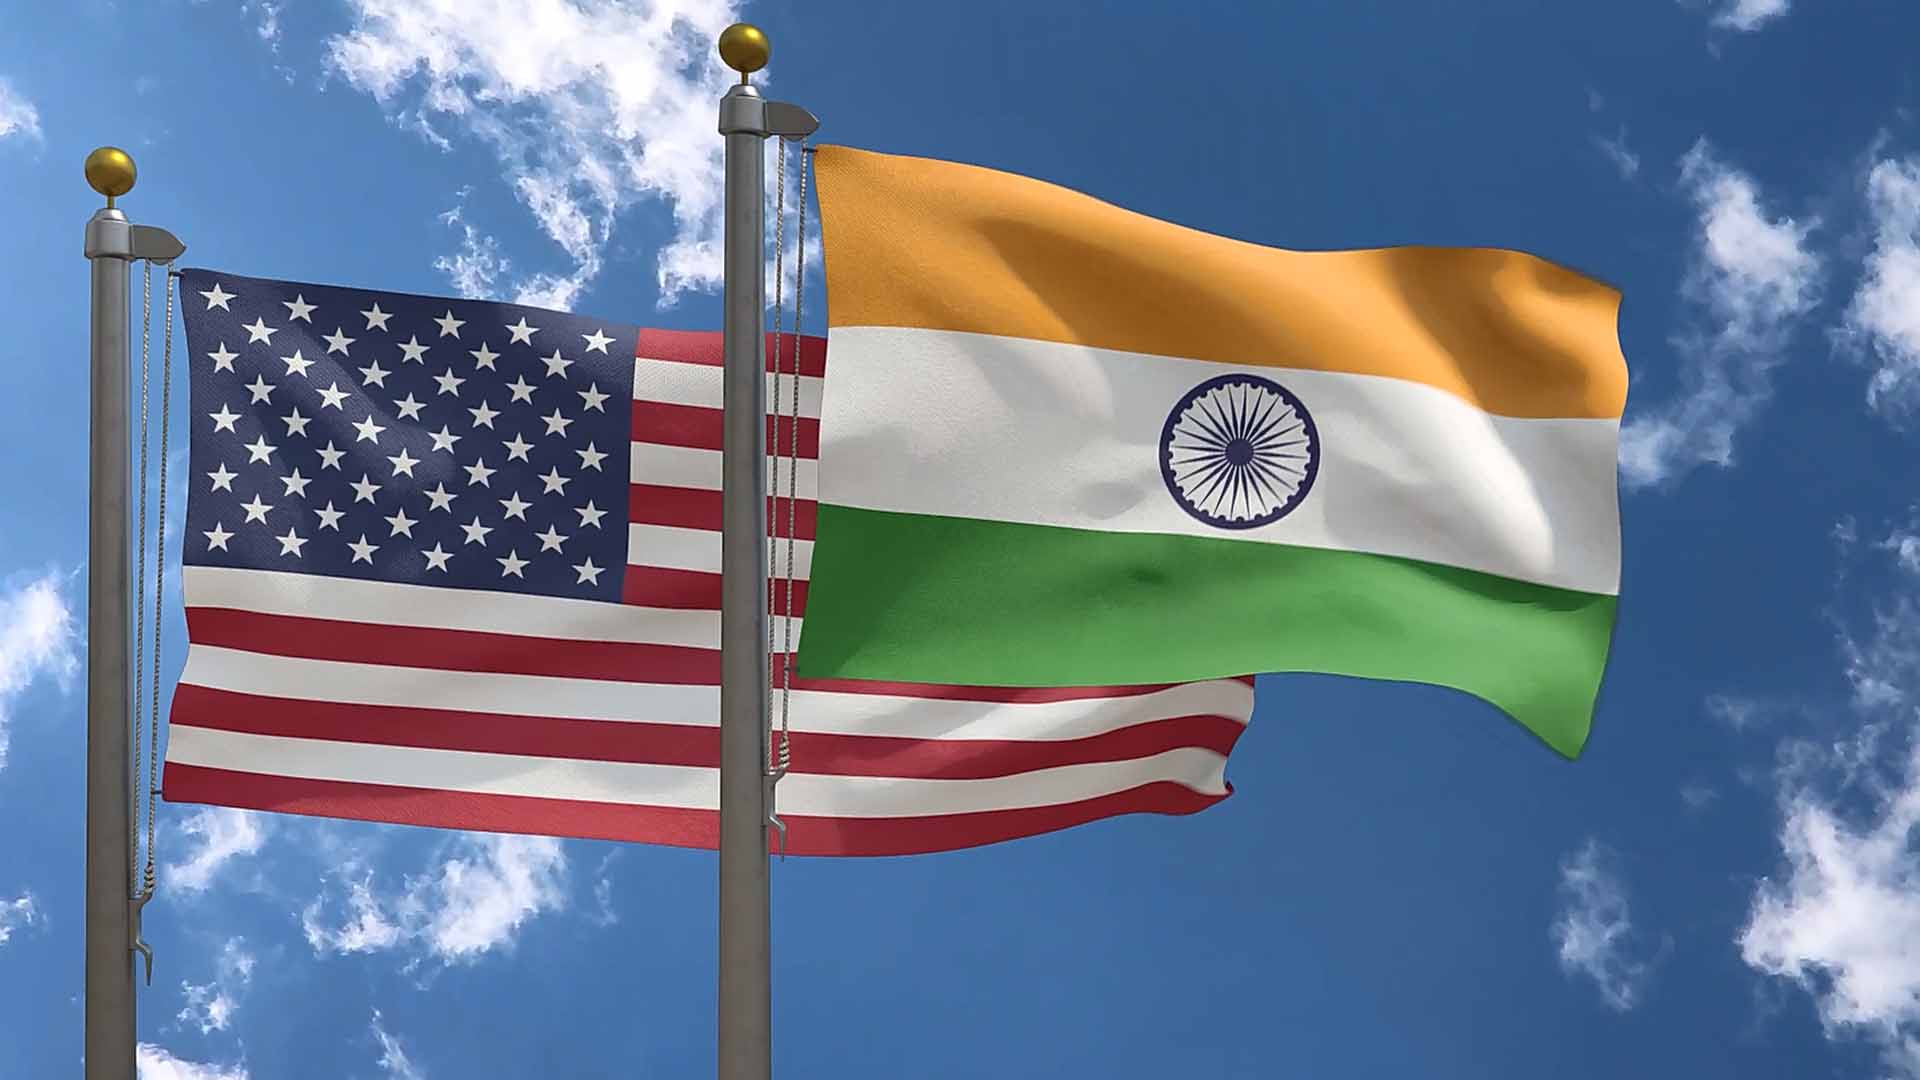 PM Modi's progressive policies bolster India-US tech collaboration